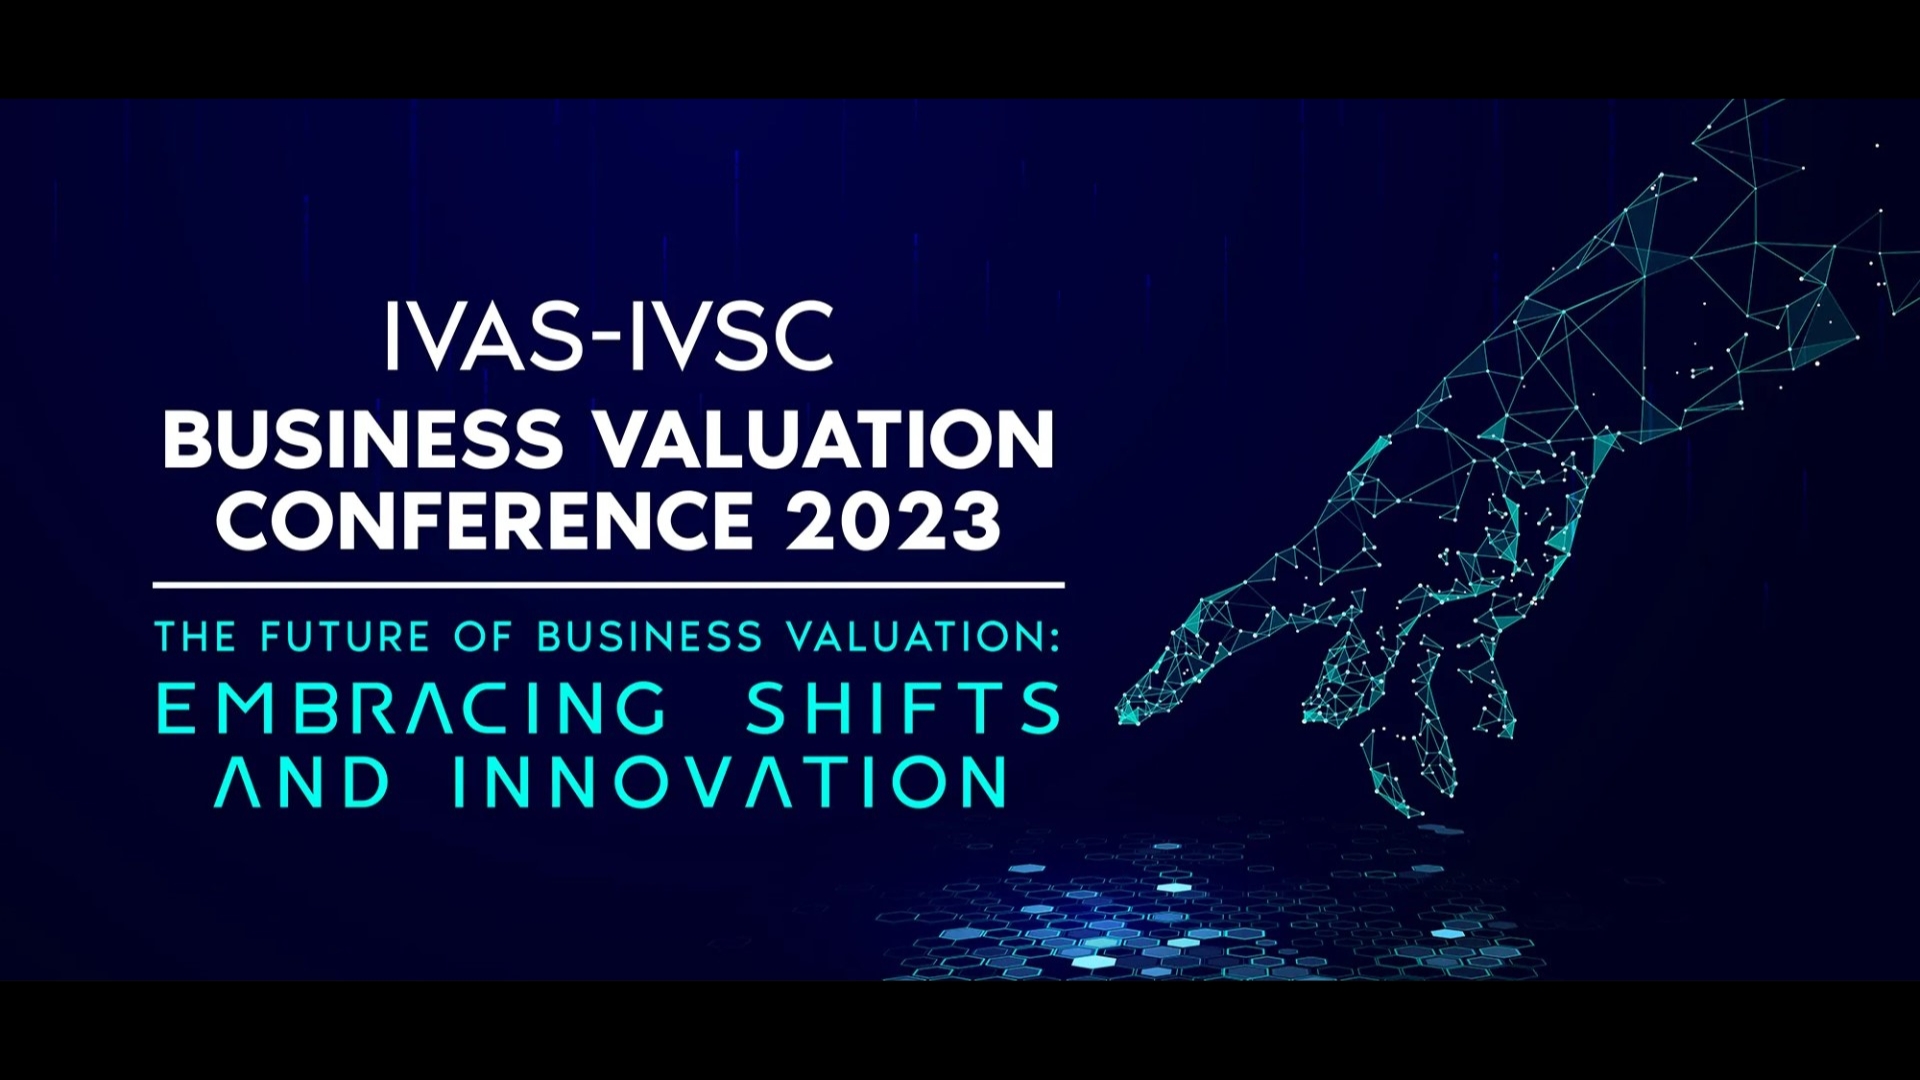 IVAS-IVSC Business Valuation Conference 2023